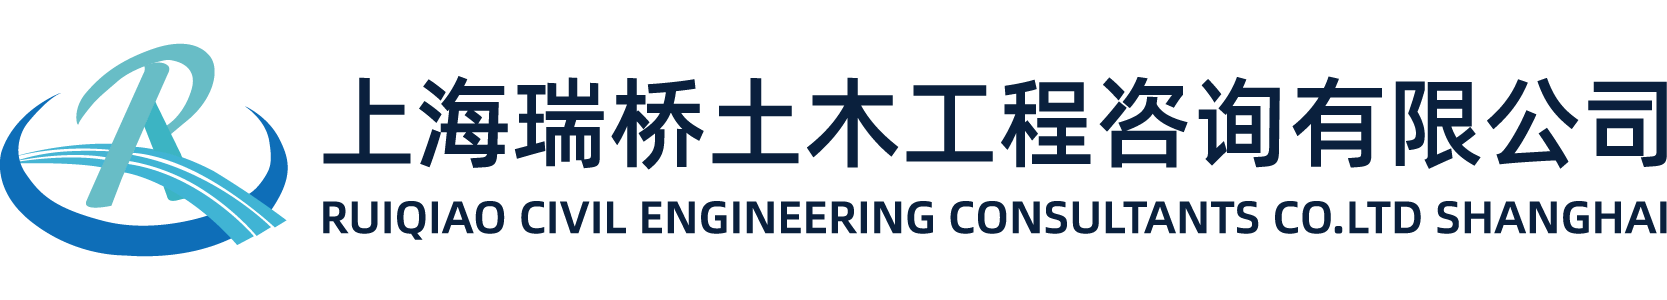 上海瑞桥土木工程咨询有限公司